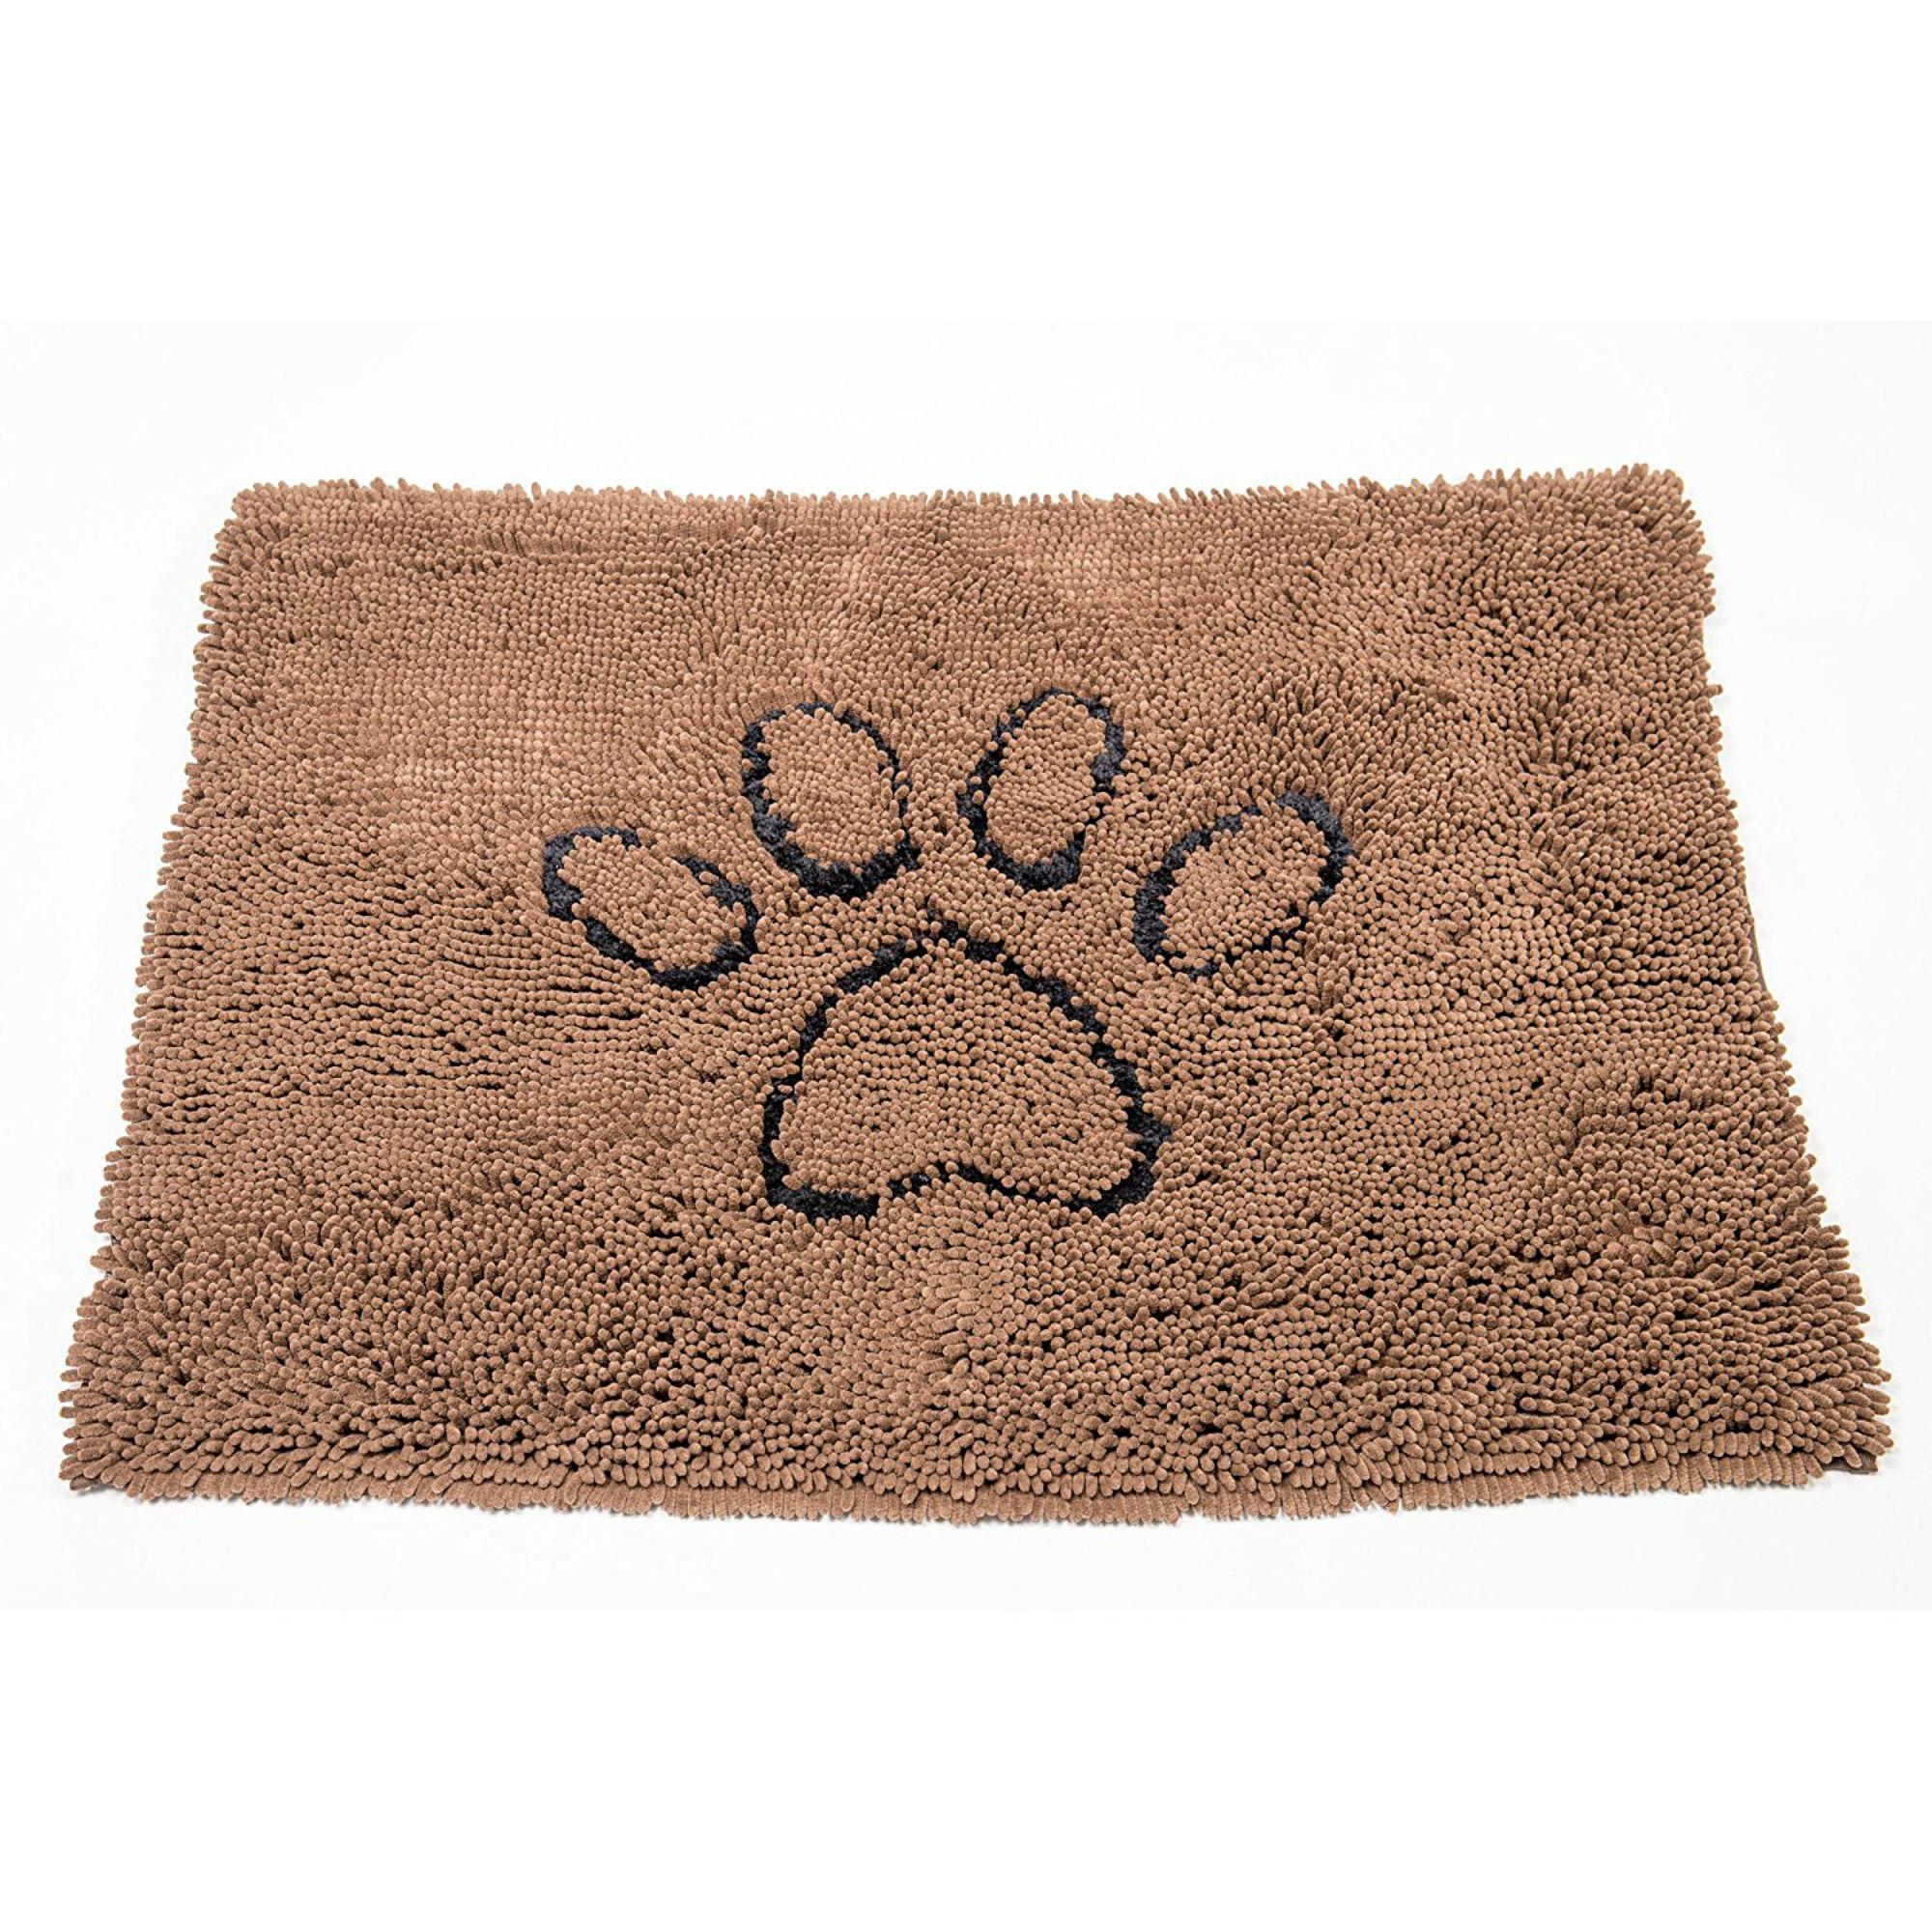 Dirty Dog Doormat - Brown